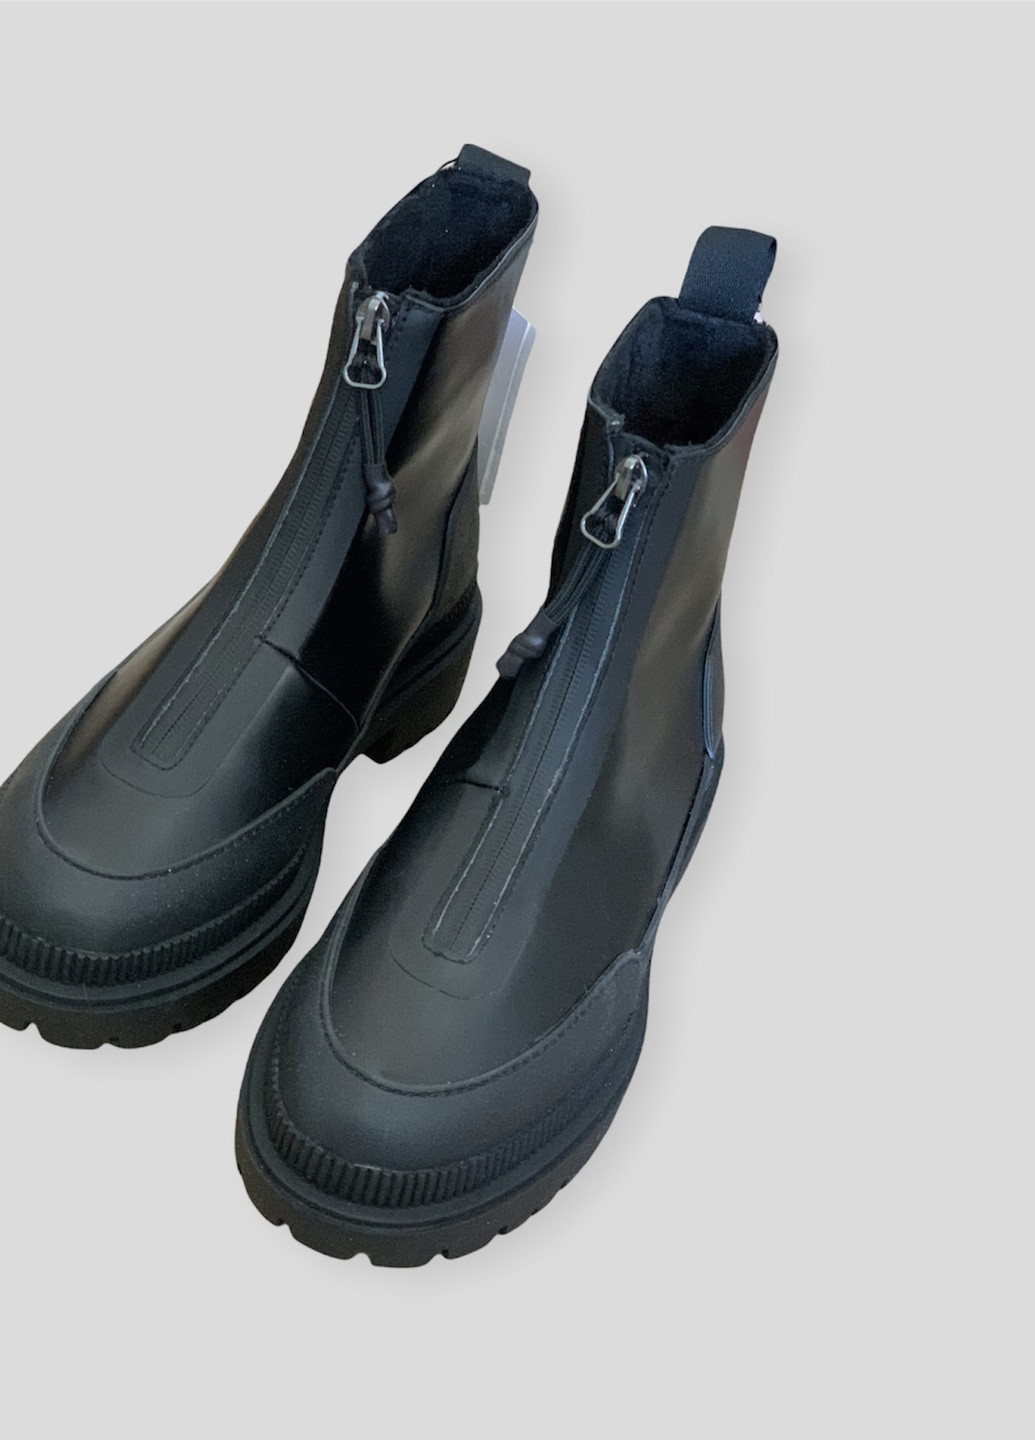 Осенние водоотталкивающие и водонепроницаемые ботинки н&м H&M с молнией из искусственной кожи